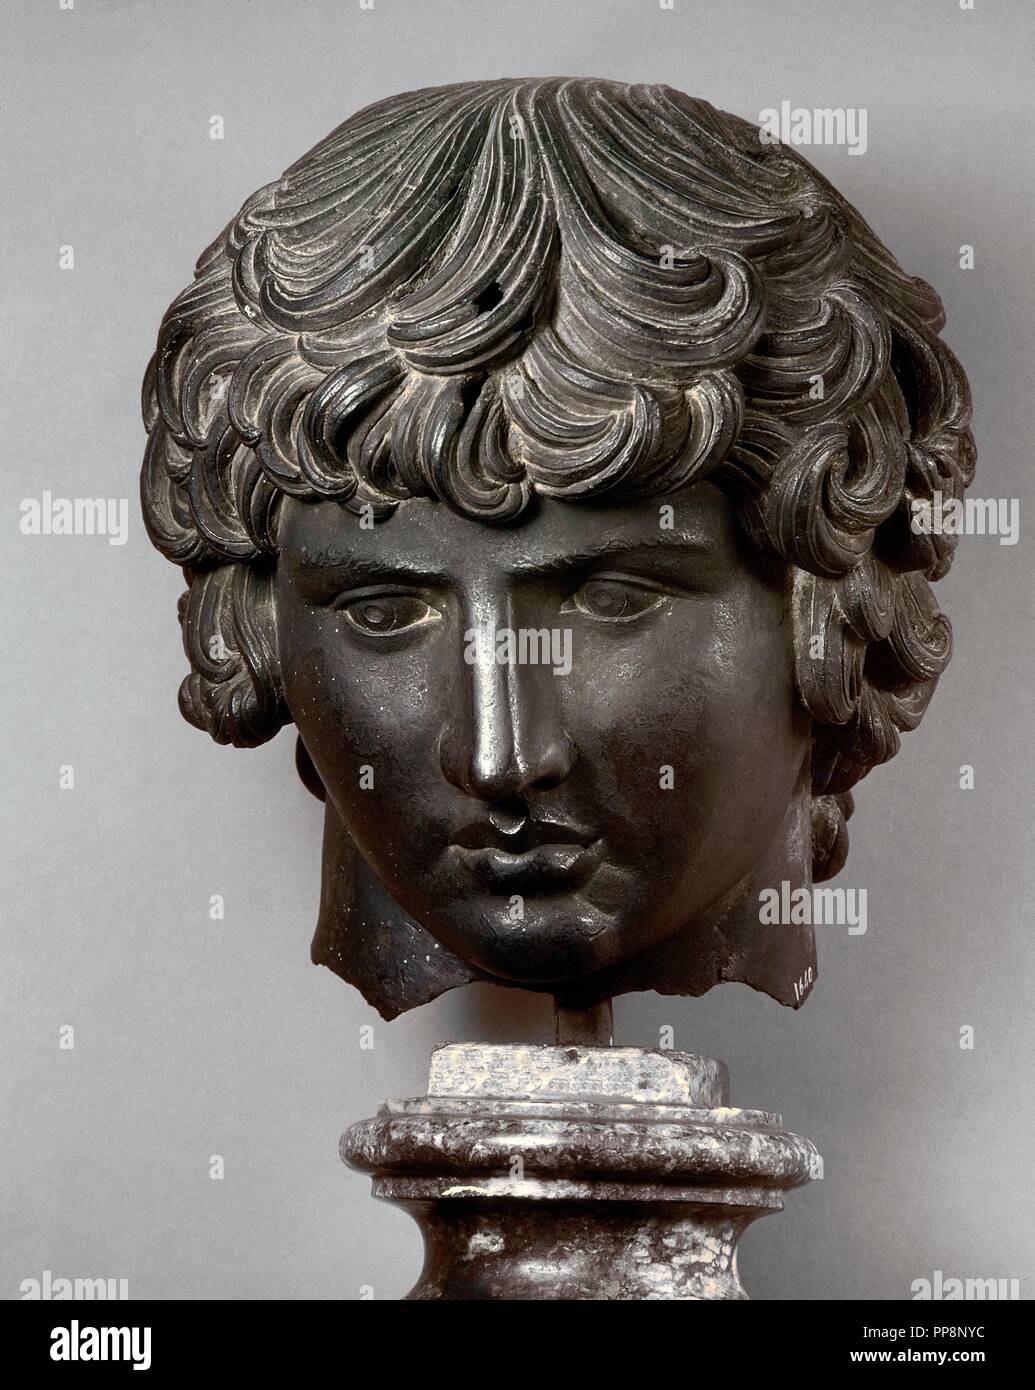 34 fotos de stock e banco de imagens de Bust Of Antinous - Getty Images